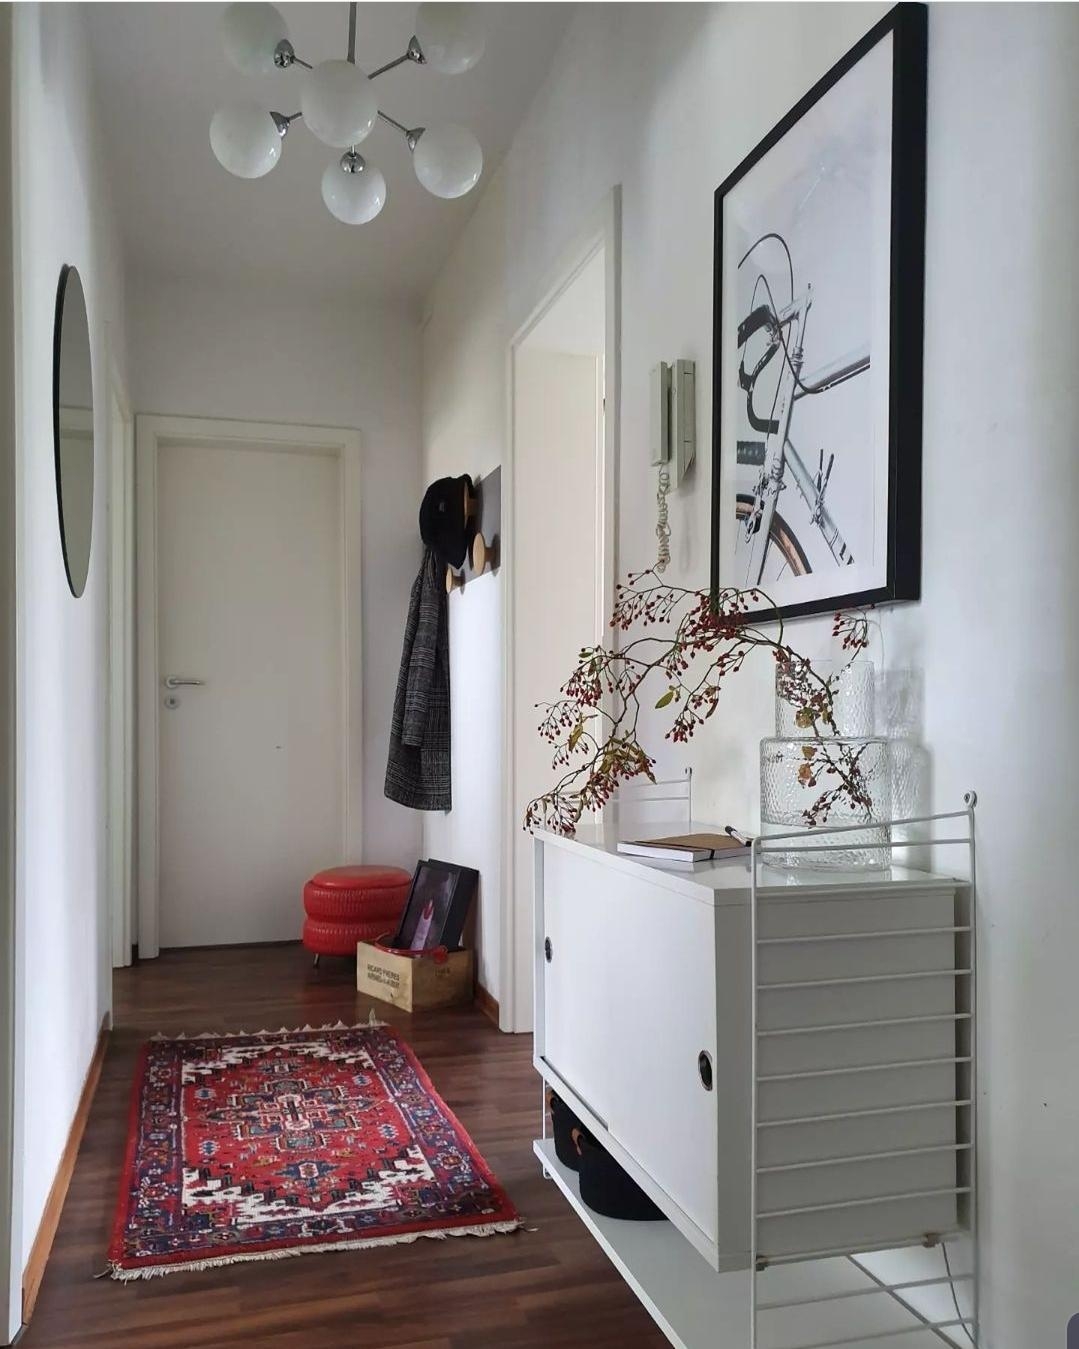 Change im #flur #hallway #eingang Willkommen #rot #interior #home #wohnen #stringfurniture